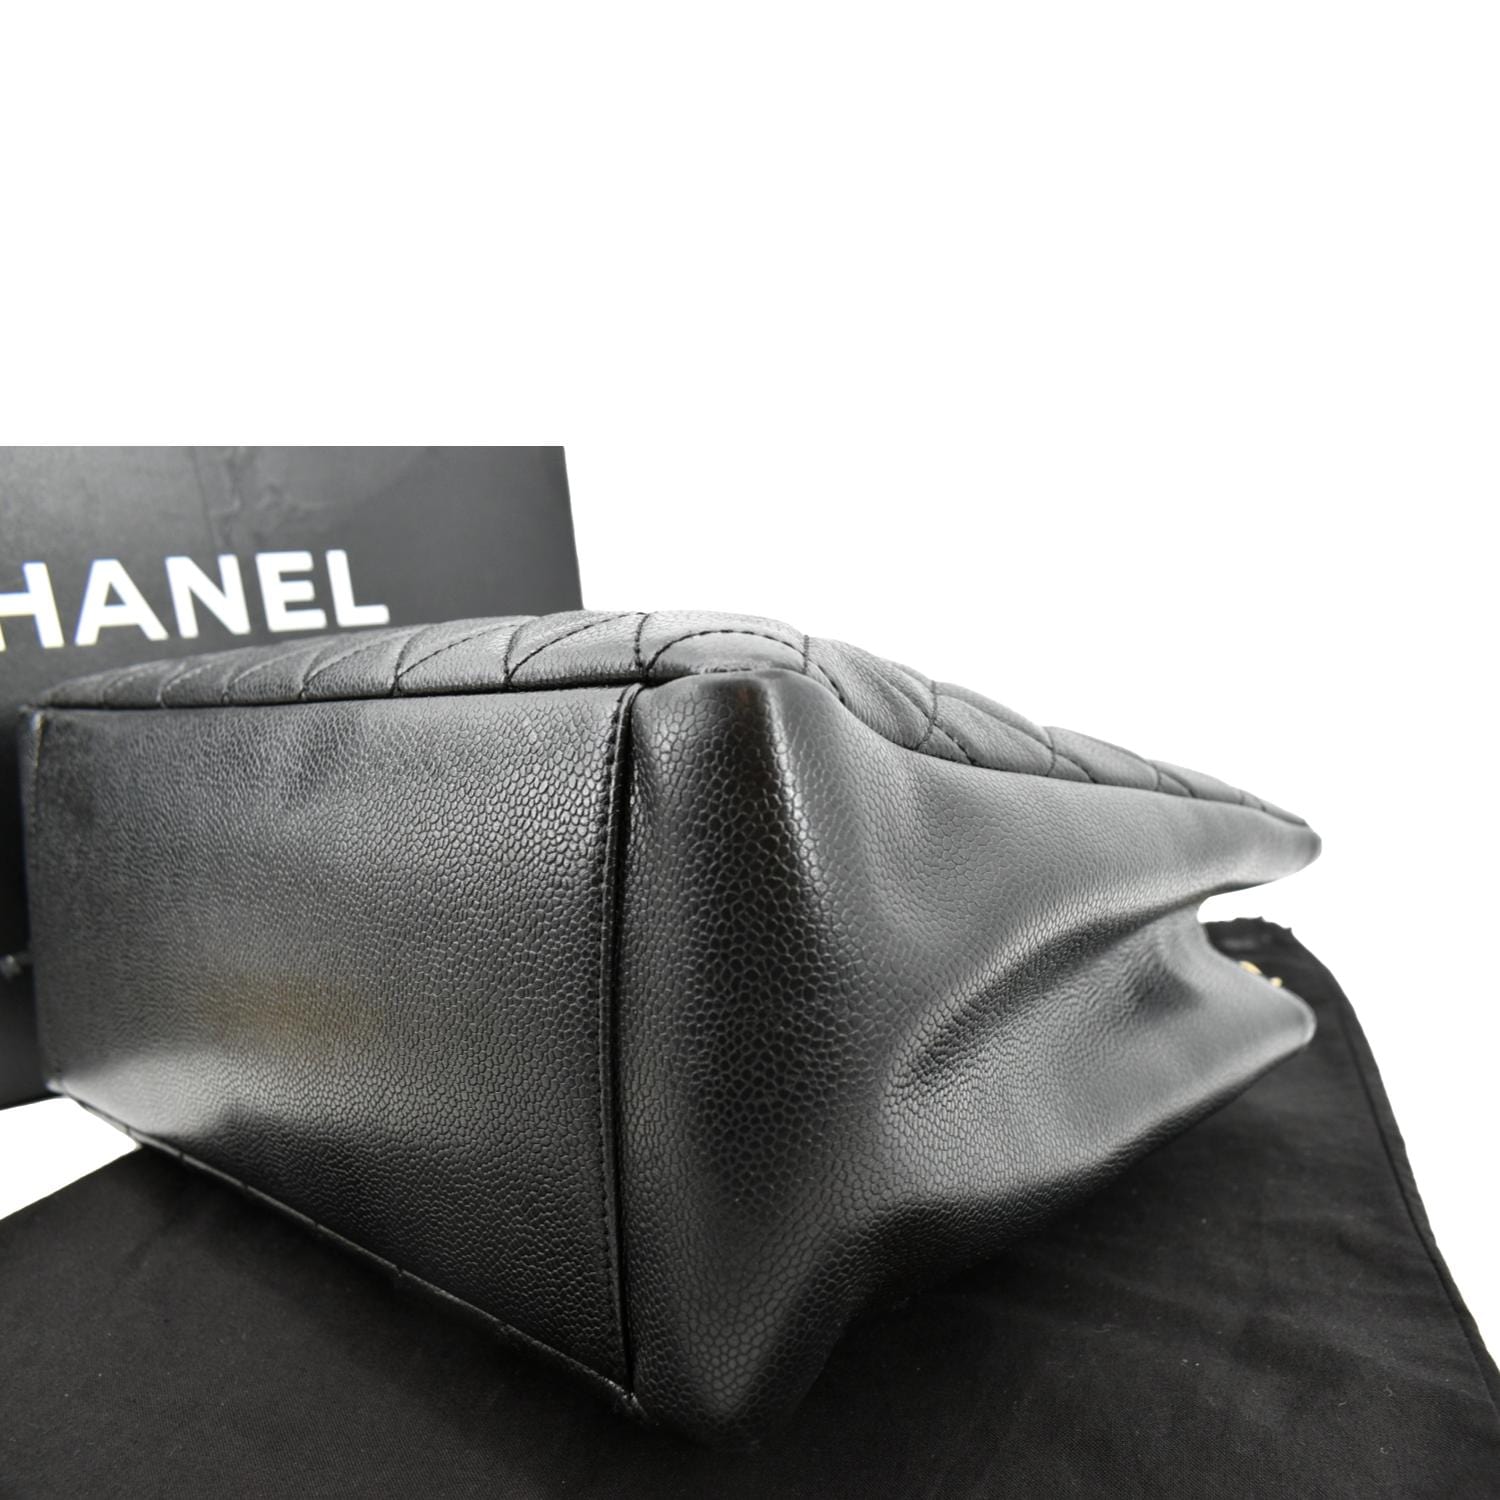 Chanel Handbag Cleaning and Repair - The Handbag Spa